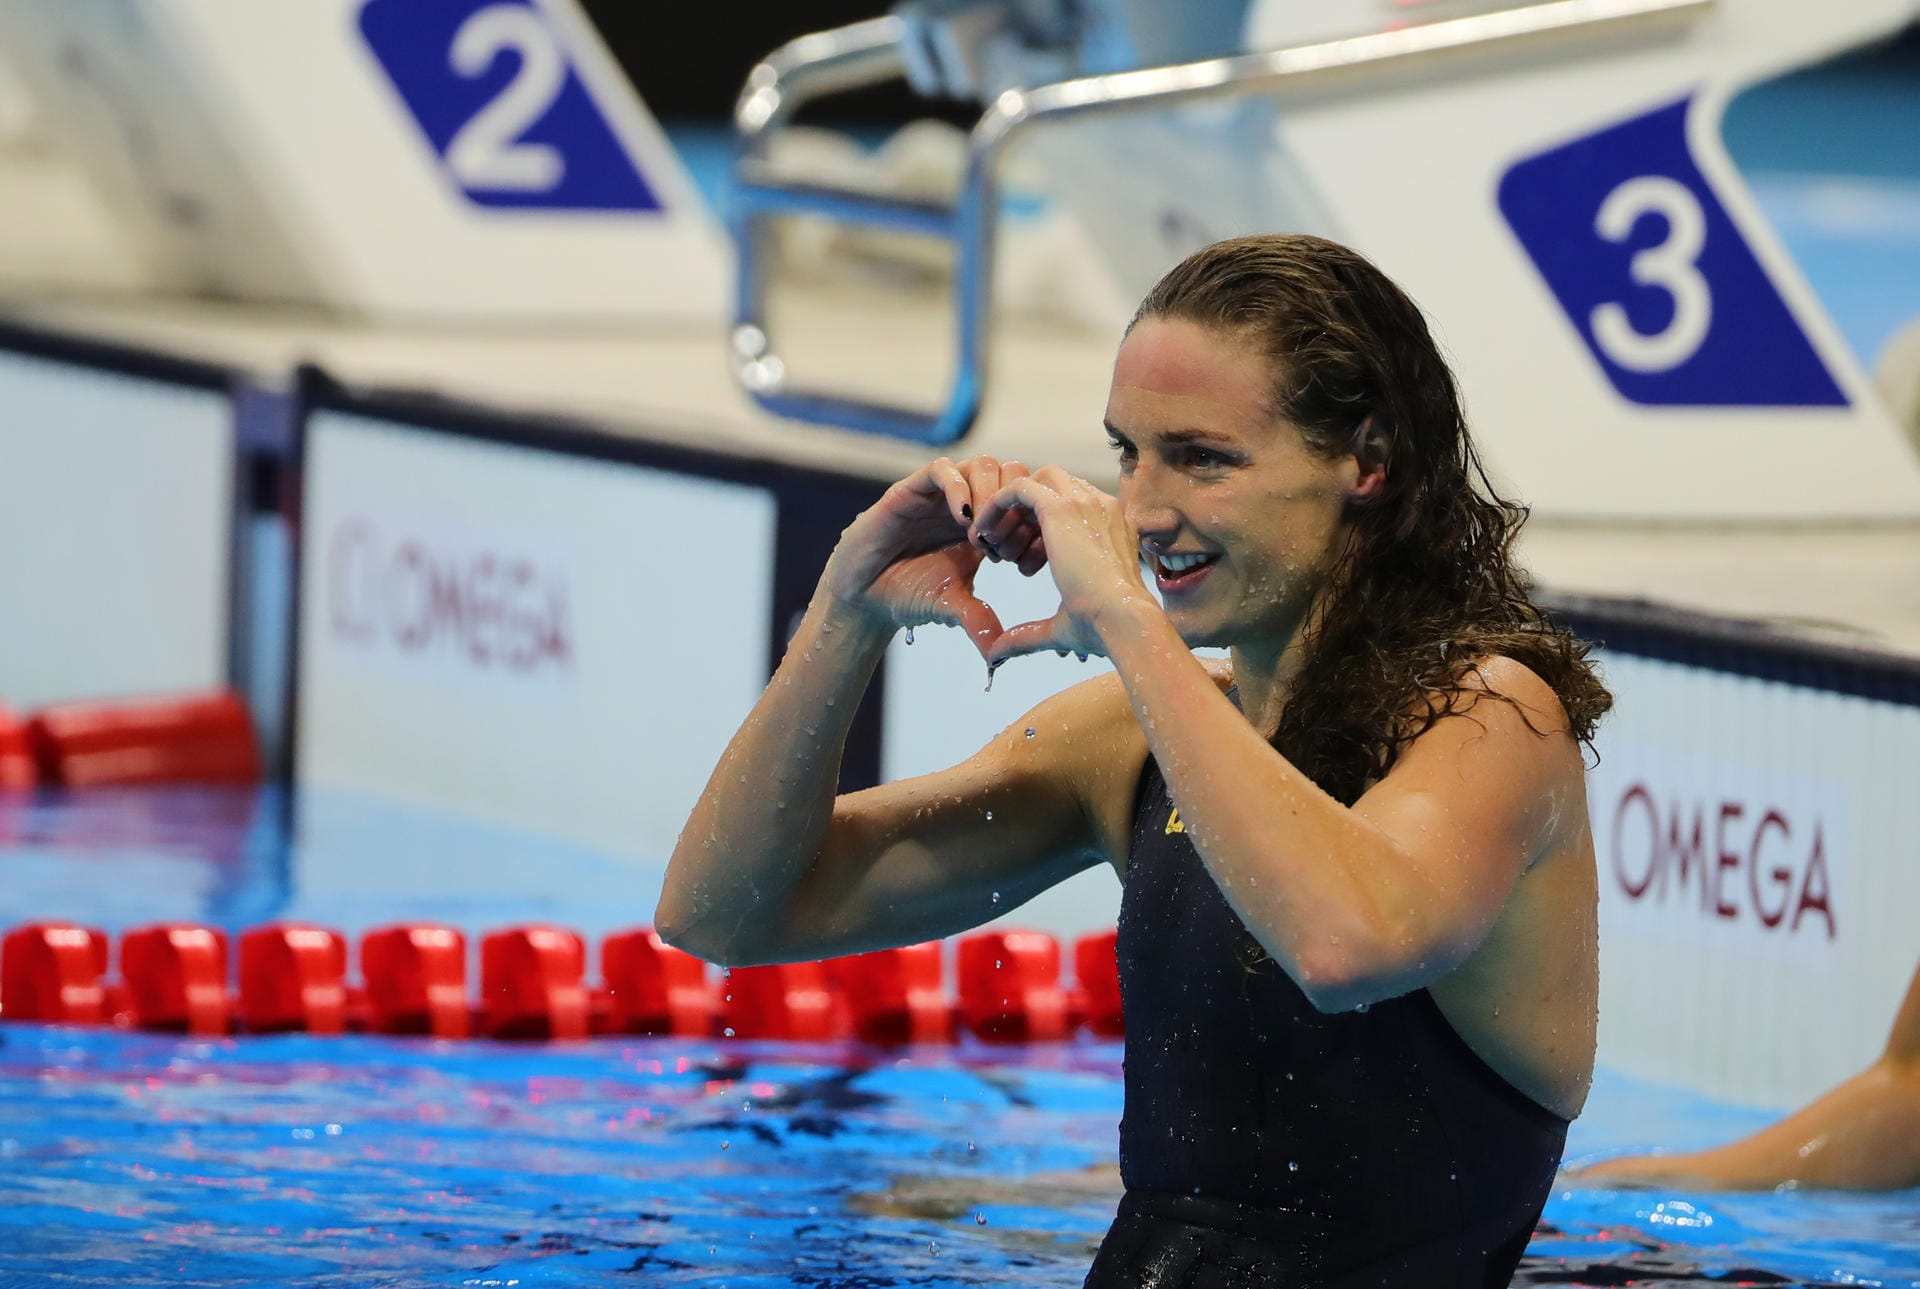 Herzenssache: Katinka Hosszu schwamm über 100 Meter Rücken zu Gold. Danach sendete die Ungarin einen Liebesgruß an ihren Mann und Trainer.